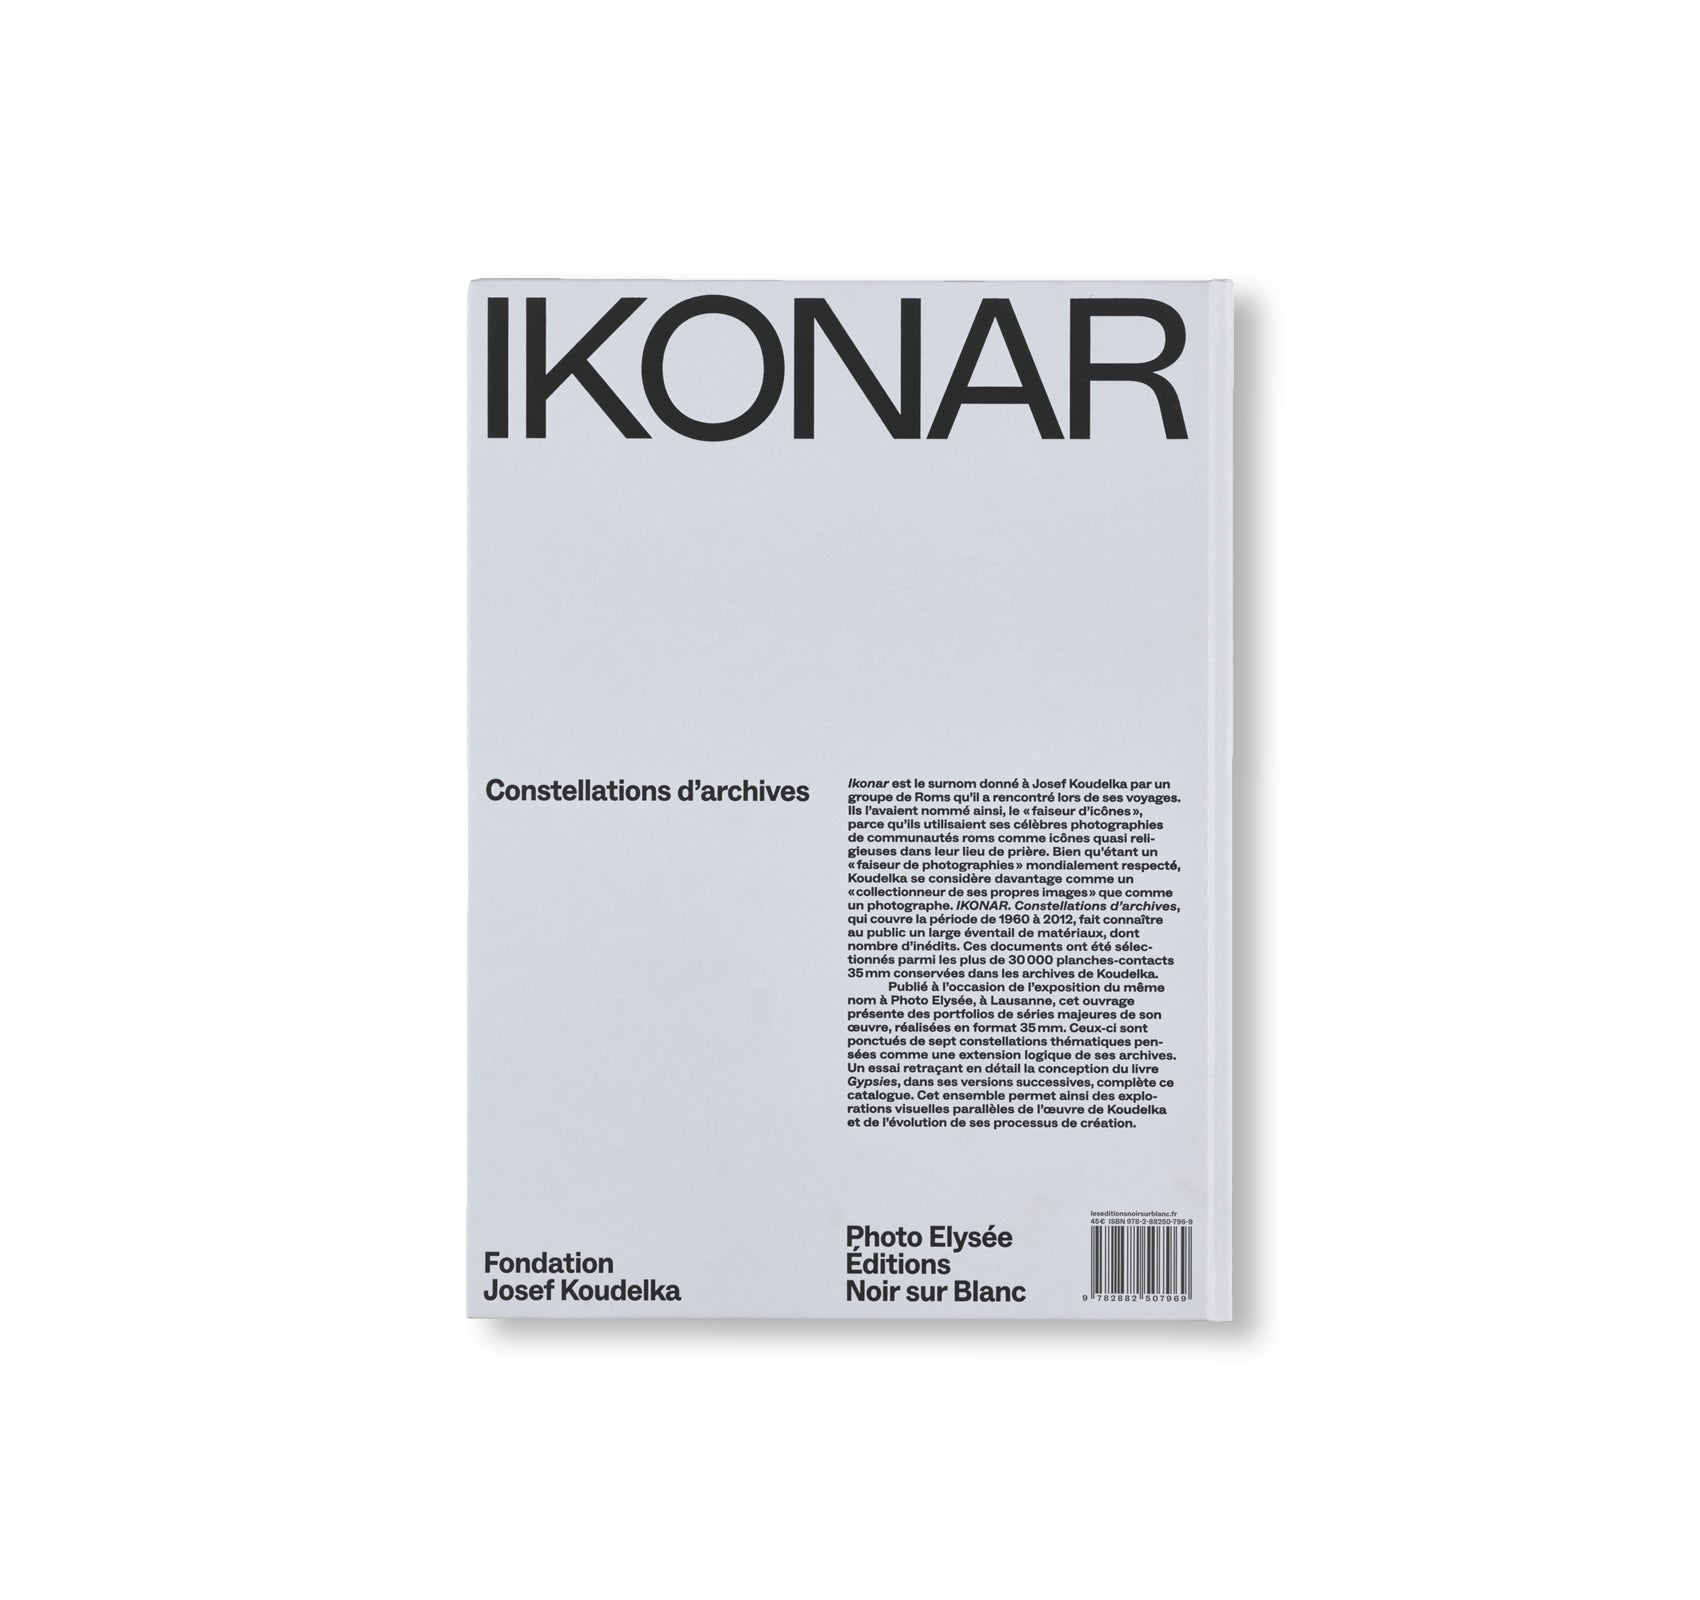 IKONAR: ARCHIVAL CONSTELLATIONS JOSEF KOUDELKA by Josef Koudelka